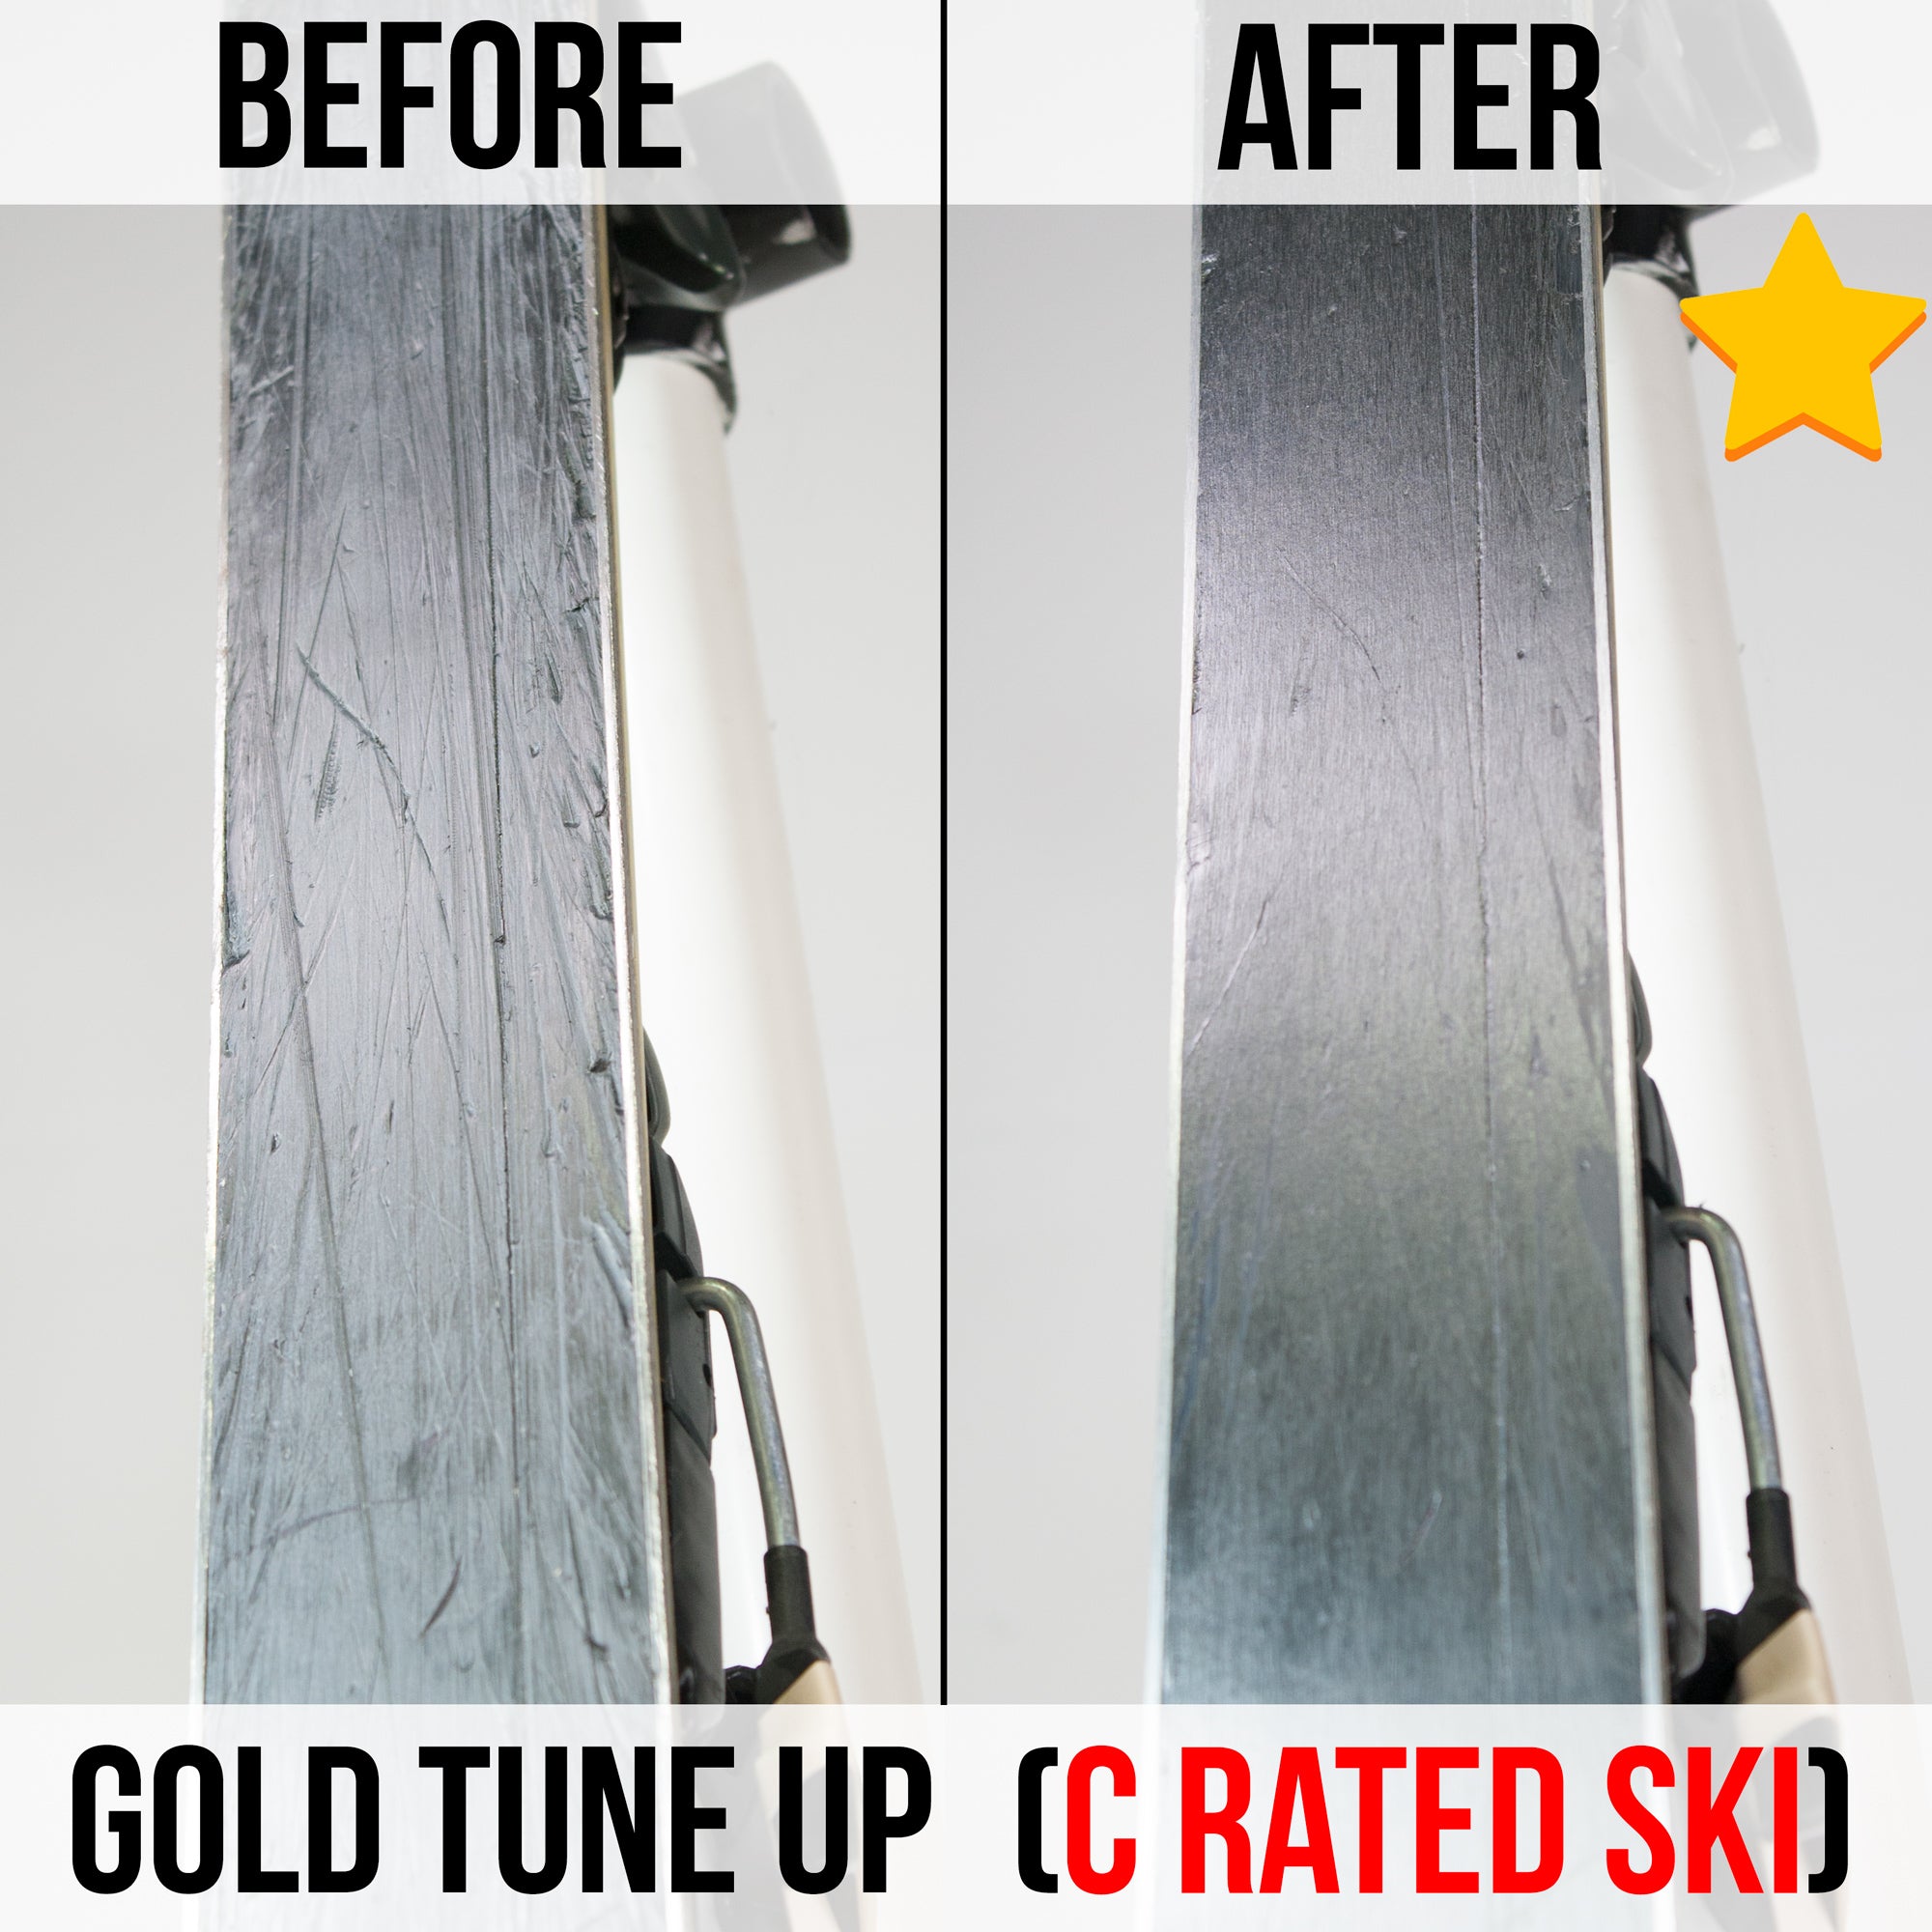 Ski & Snowboard Base Repair: Instructions